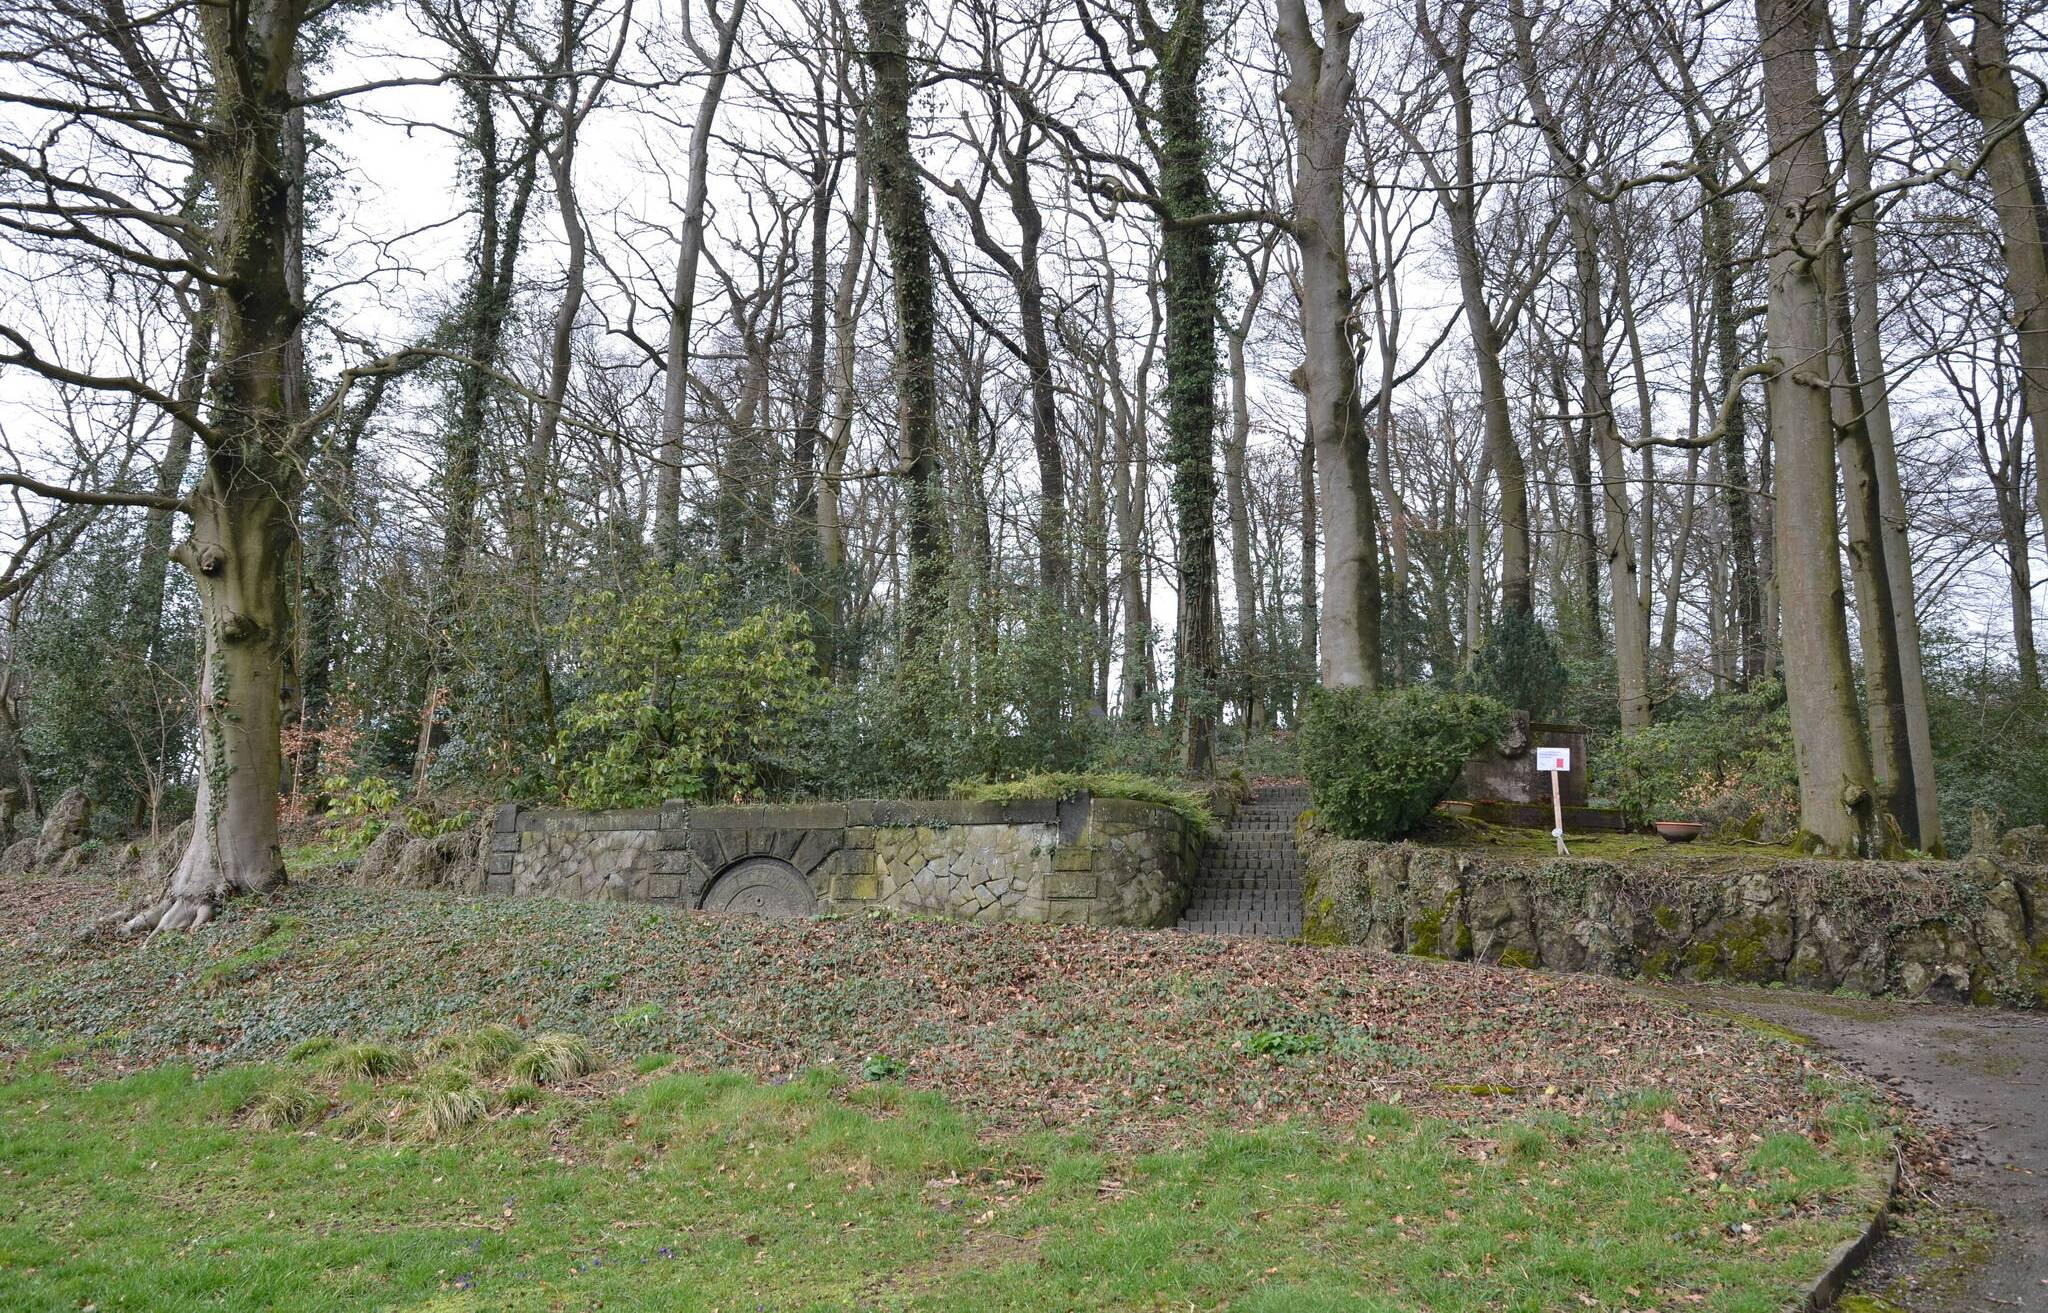  Der Bereich der Urnenwaldgräber auf dem Friedhof Varresbeck. 